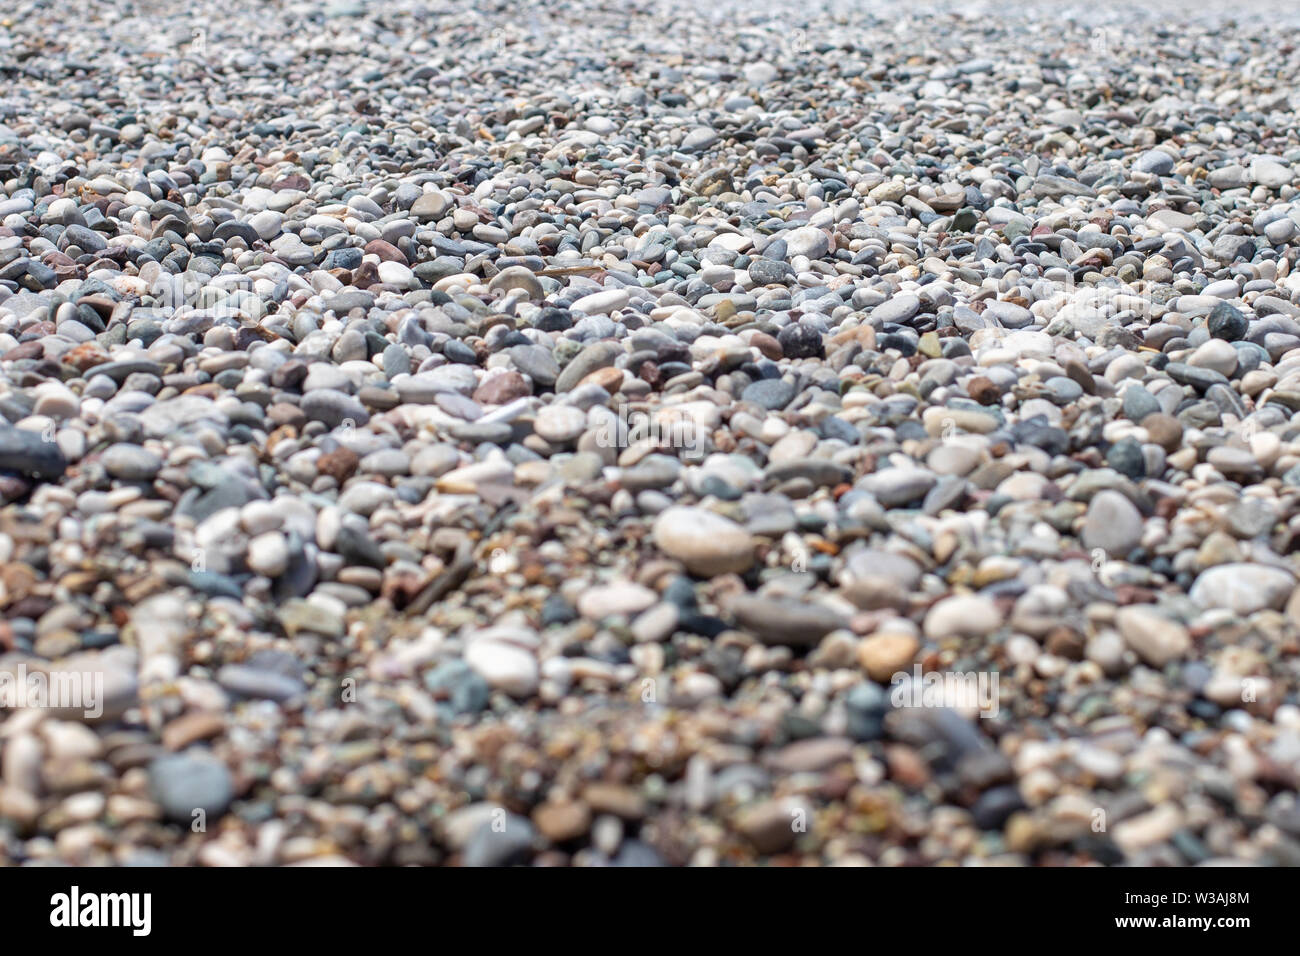 Die Textur der Kieselstrand entfernt. Hintergrund Der kleine Kieselsteine am Strand. Runden Kieseln. Verschwommenen Hintergrund. Ein Bild mit offener Blende Stockfoto